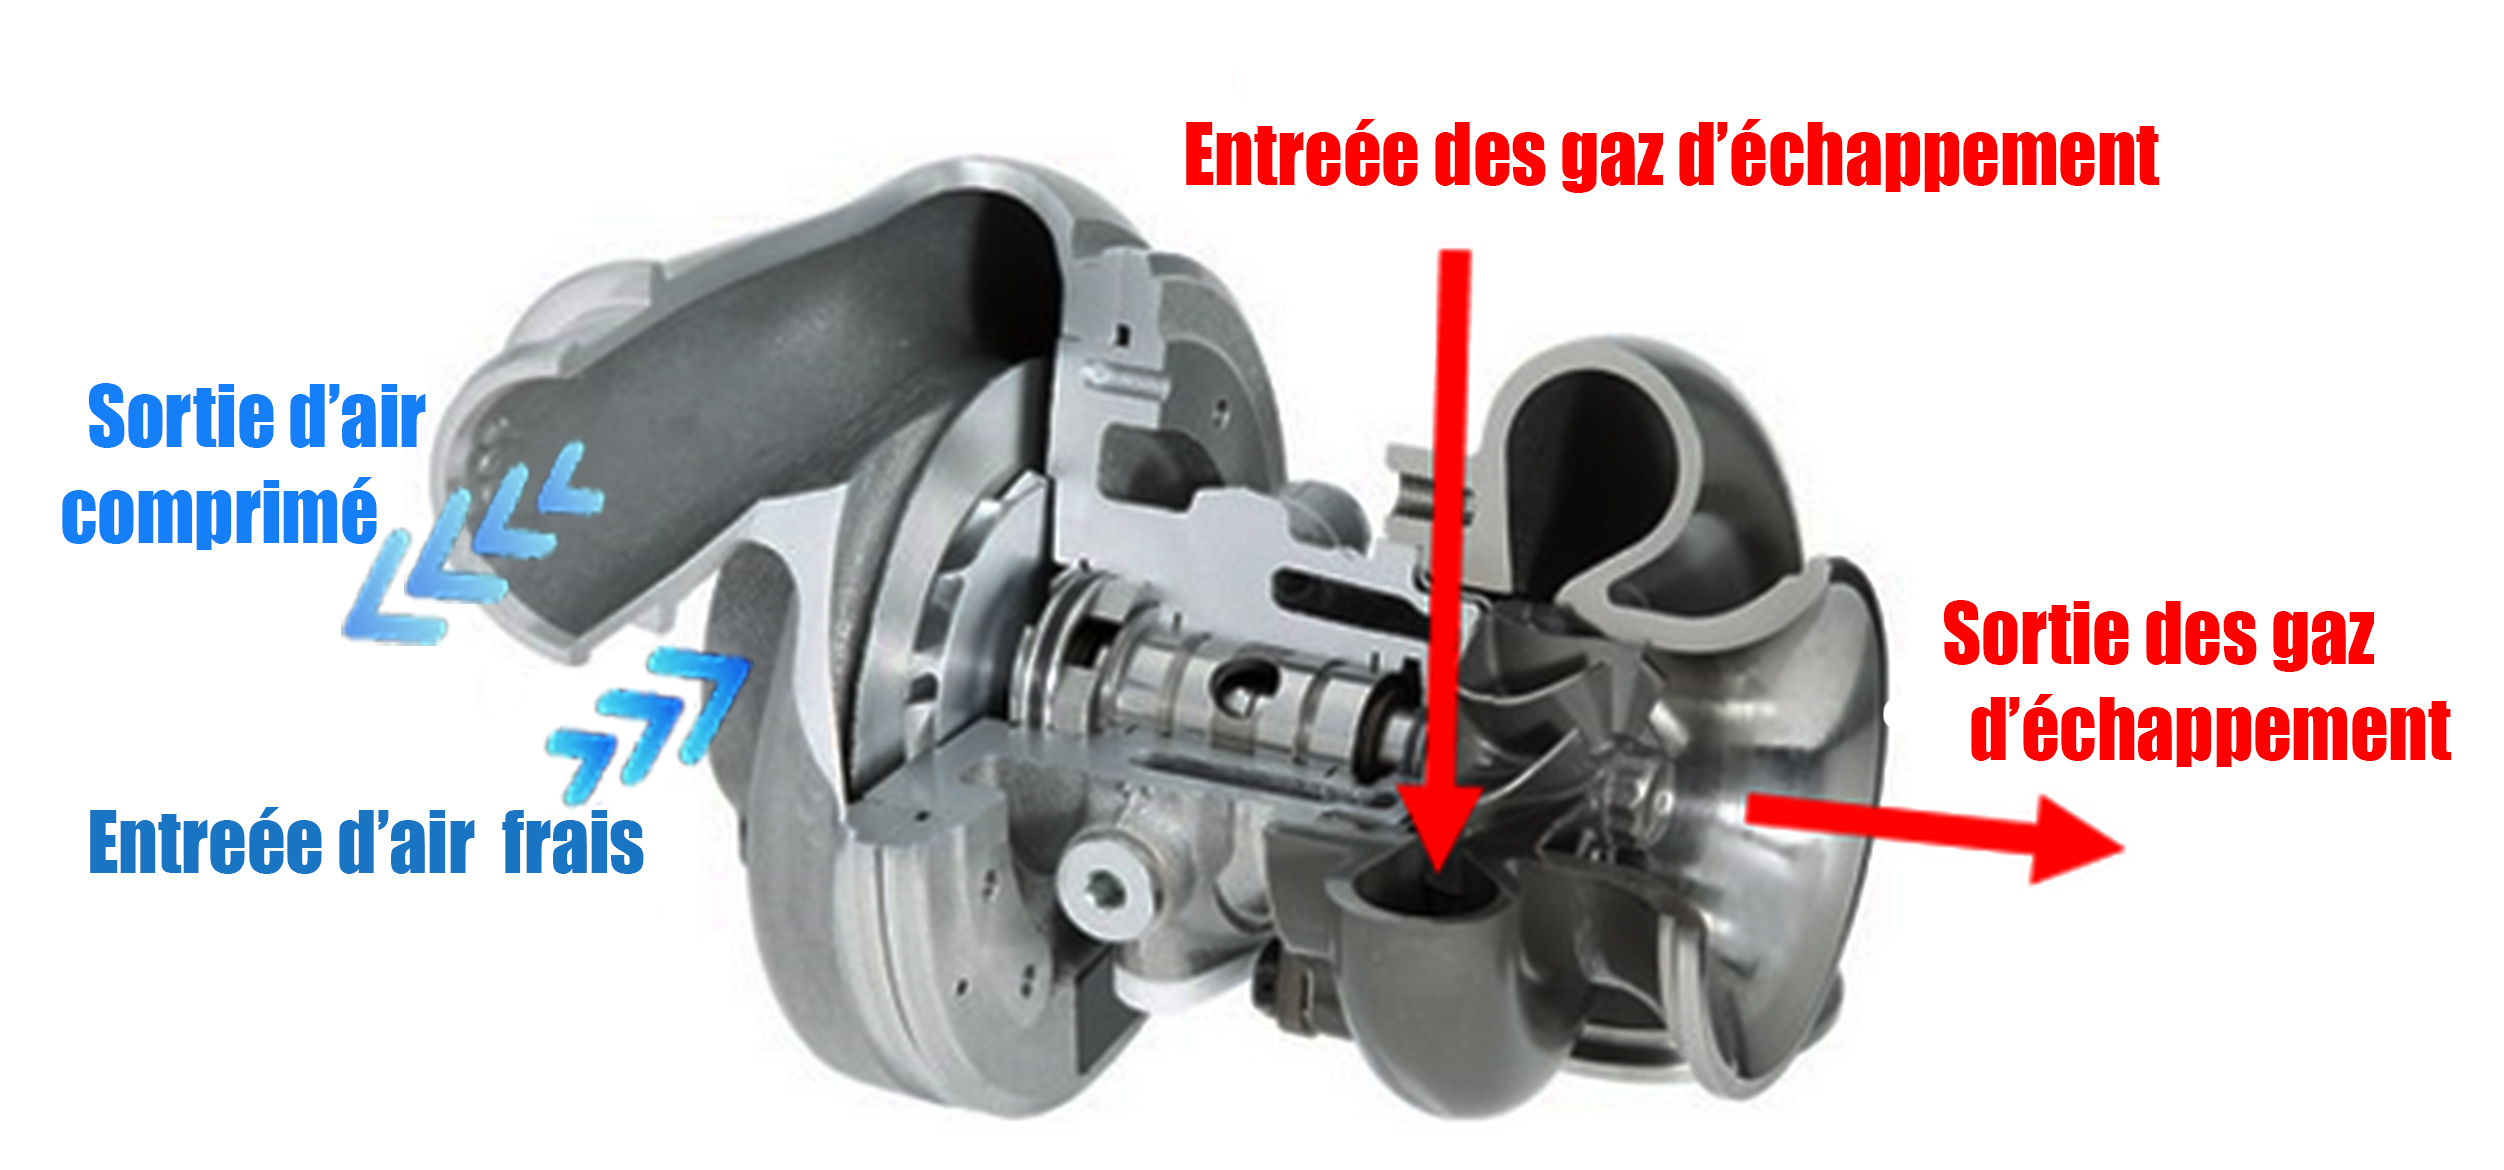 Tout savoir sur le turbo : fonctionnement, avantages - Blog Vivacar.fr